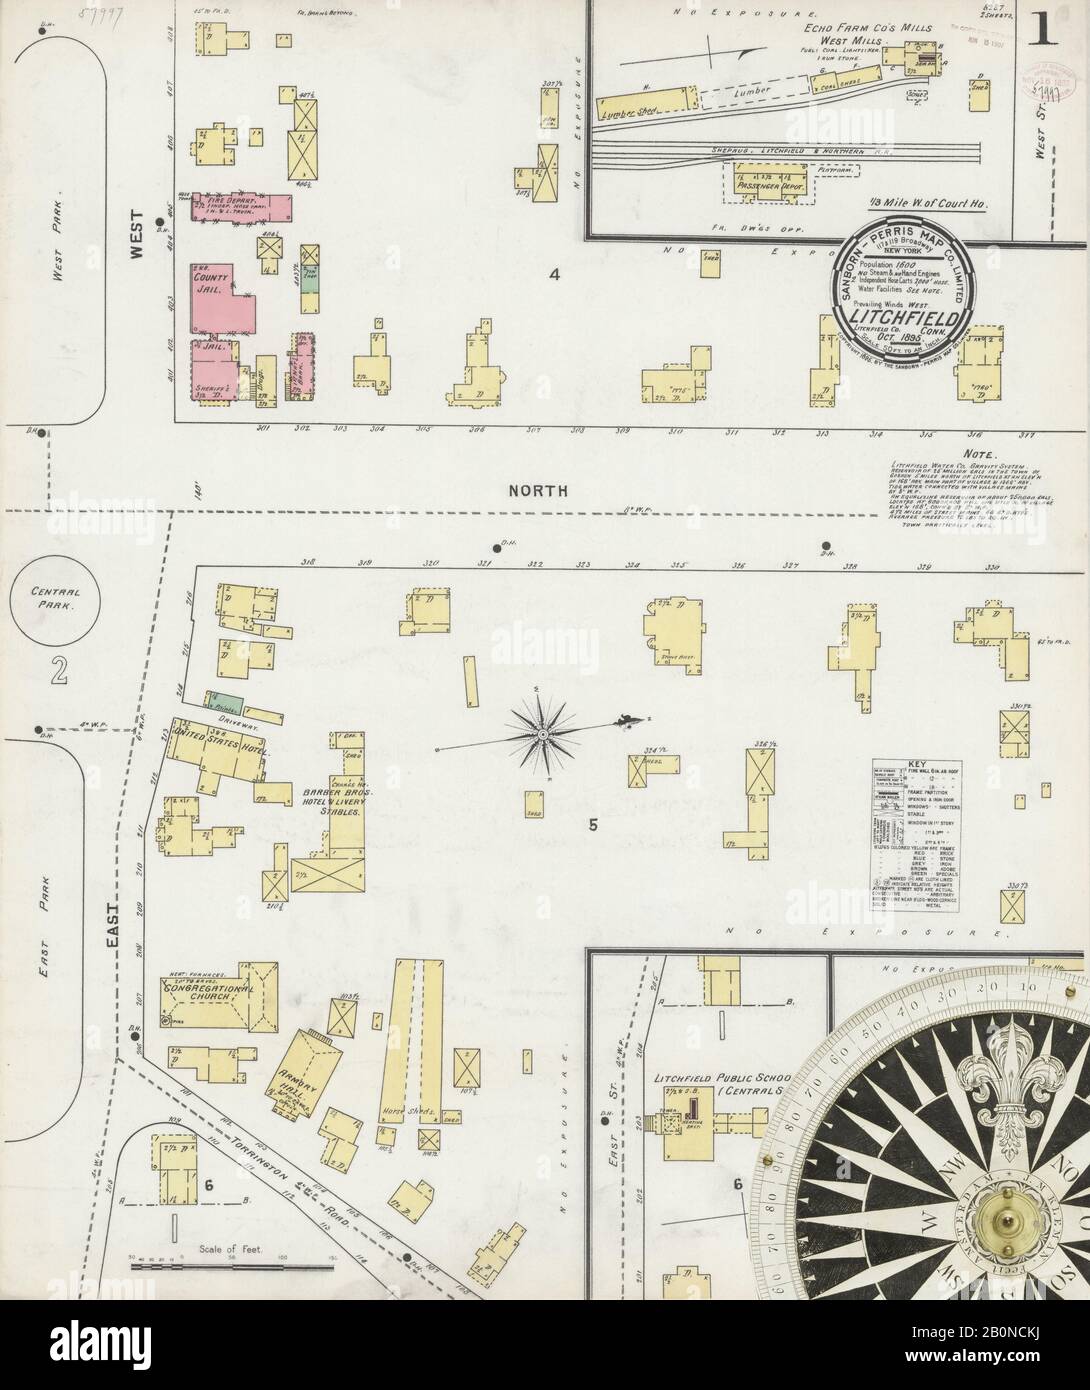 Bild 1 von Sanborn Fire Insurance Map aus Litchfield, Litchfield County, Connecticut. Okt. 2 Blatt(e), Amerika, Straßenkarte mit einem Kompass Aus Dem 19. Jahrhundert Stockfoto